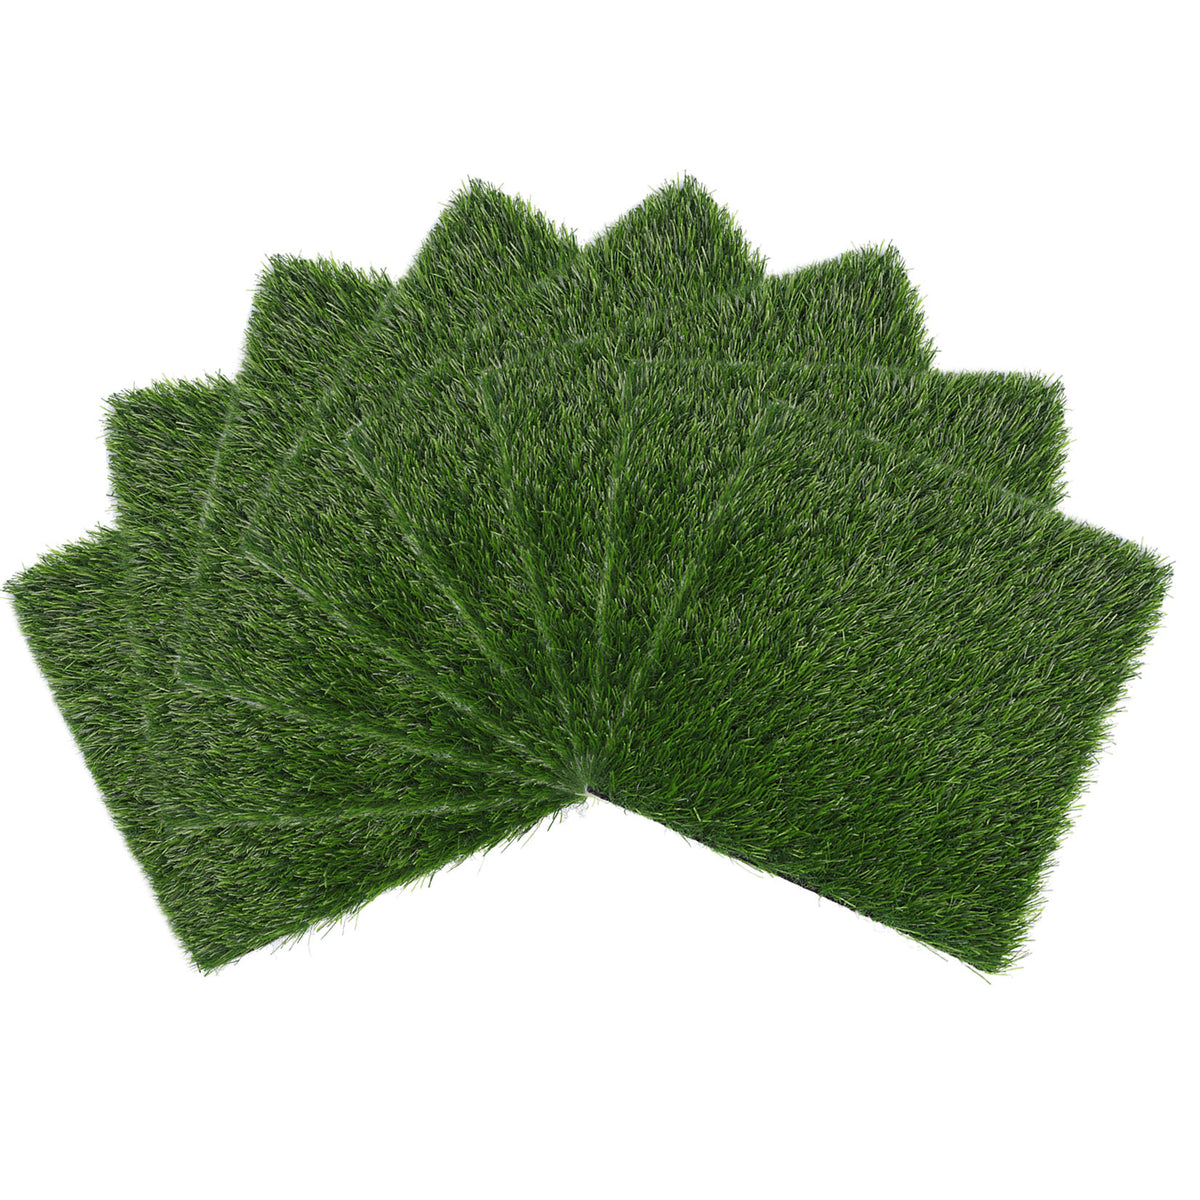 Earthflora > Artificial Grass Mats > Raffia Grass Mat - Dark Brown (IFR)